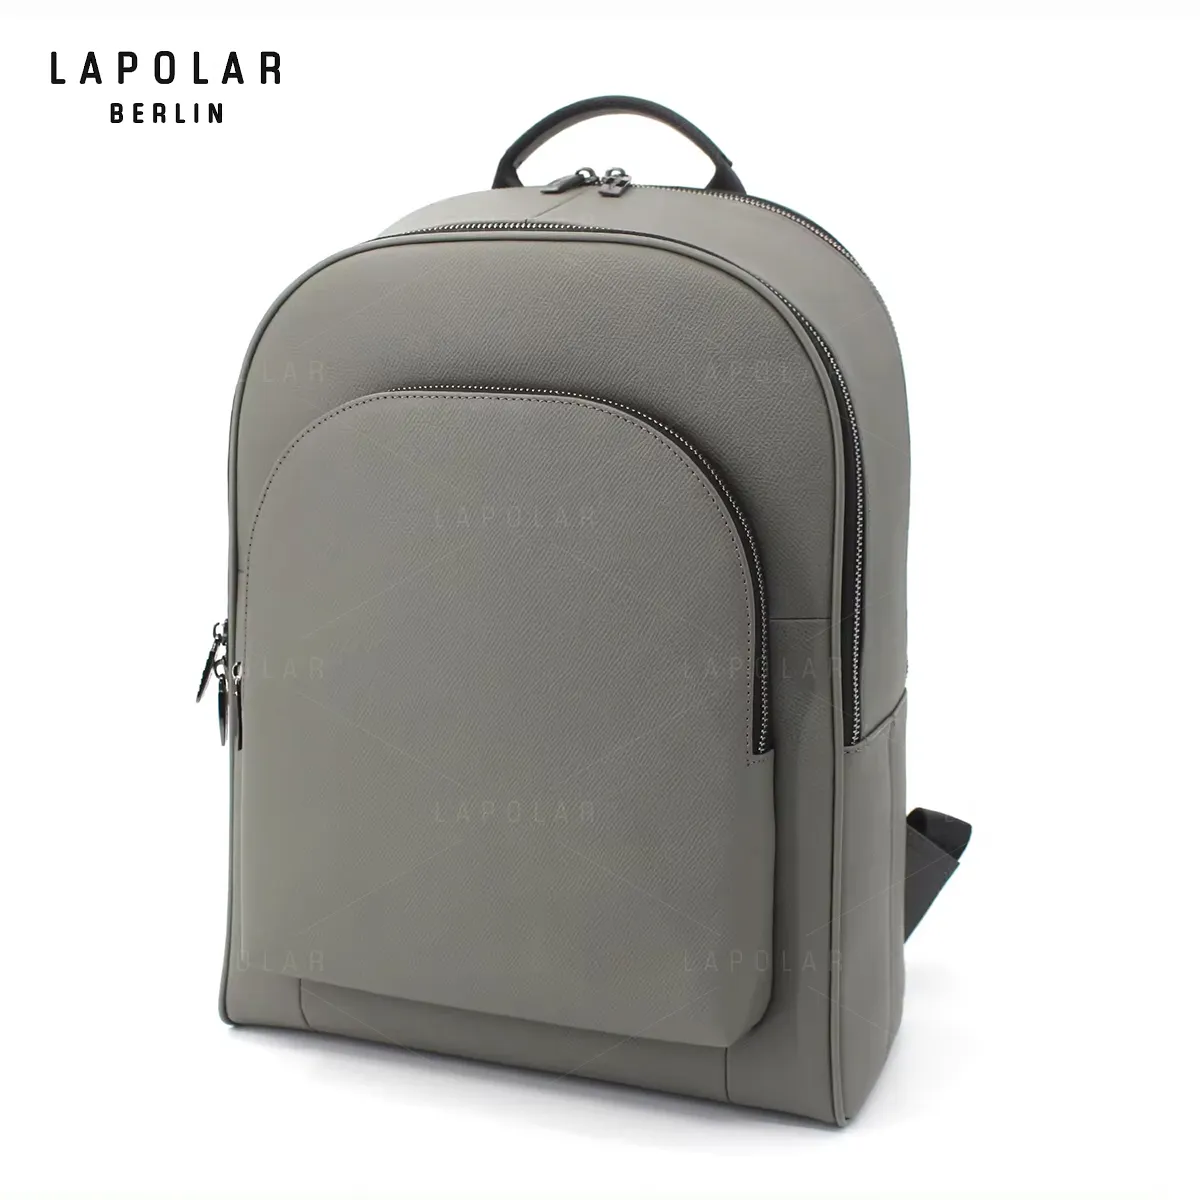 LAPOLAR yüksek kaliteli sırt çantası mikrofiber deri sırt çantası seyahat için erkekler çanta için özel logo sırt çantası